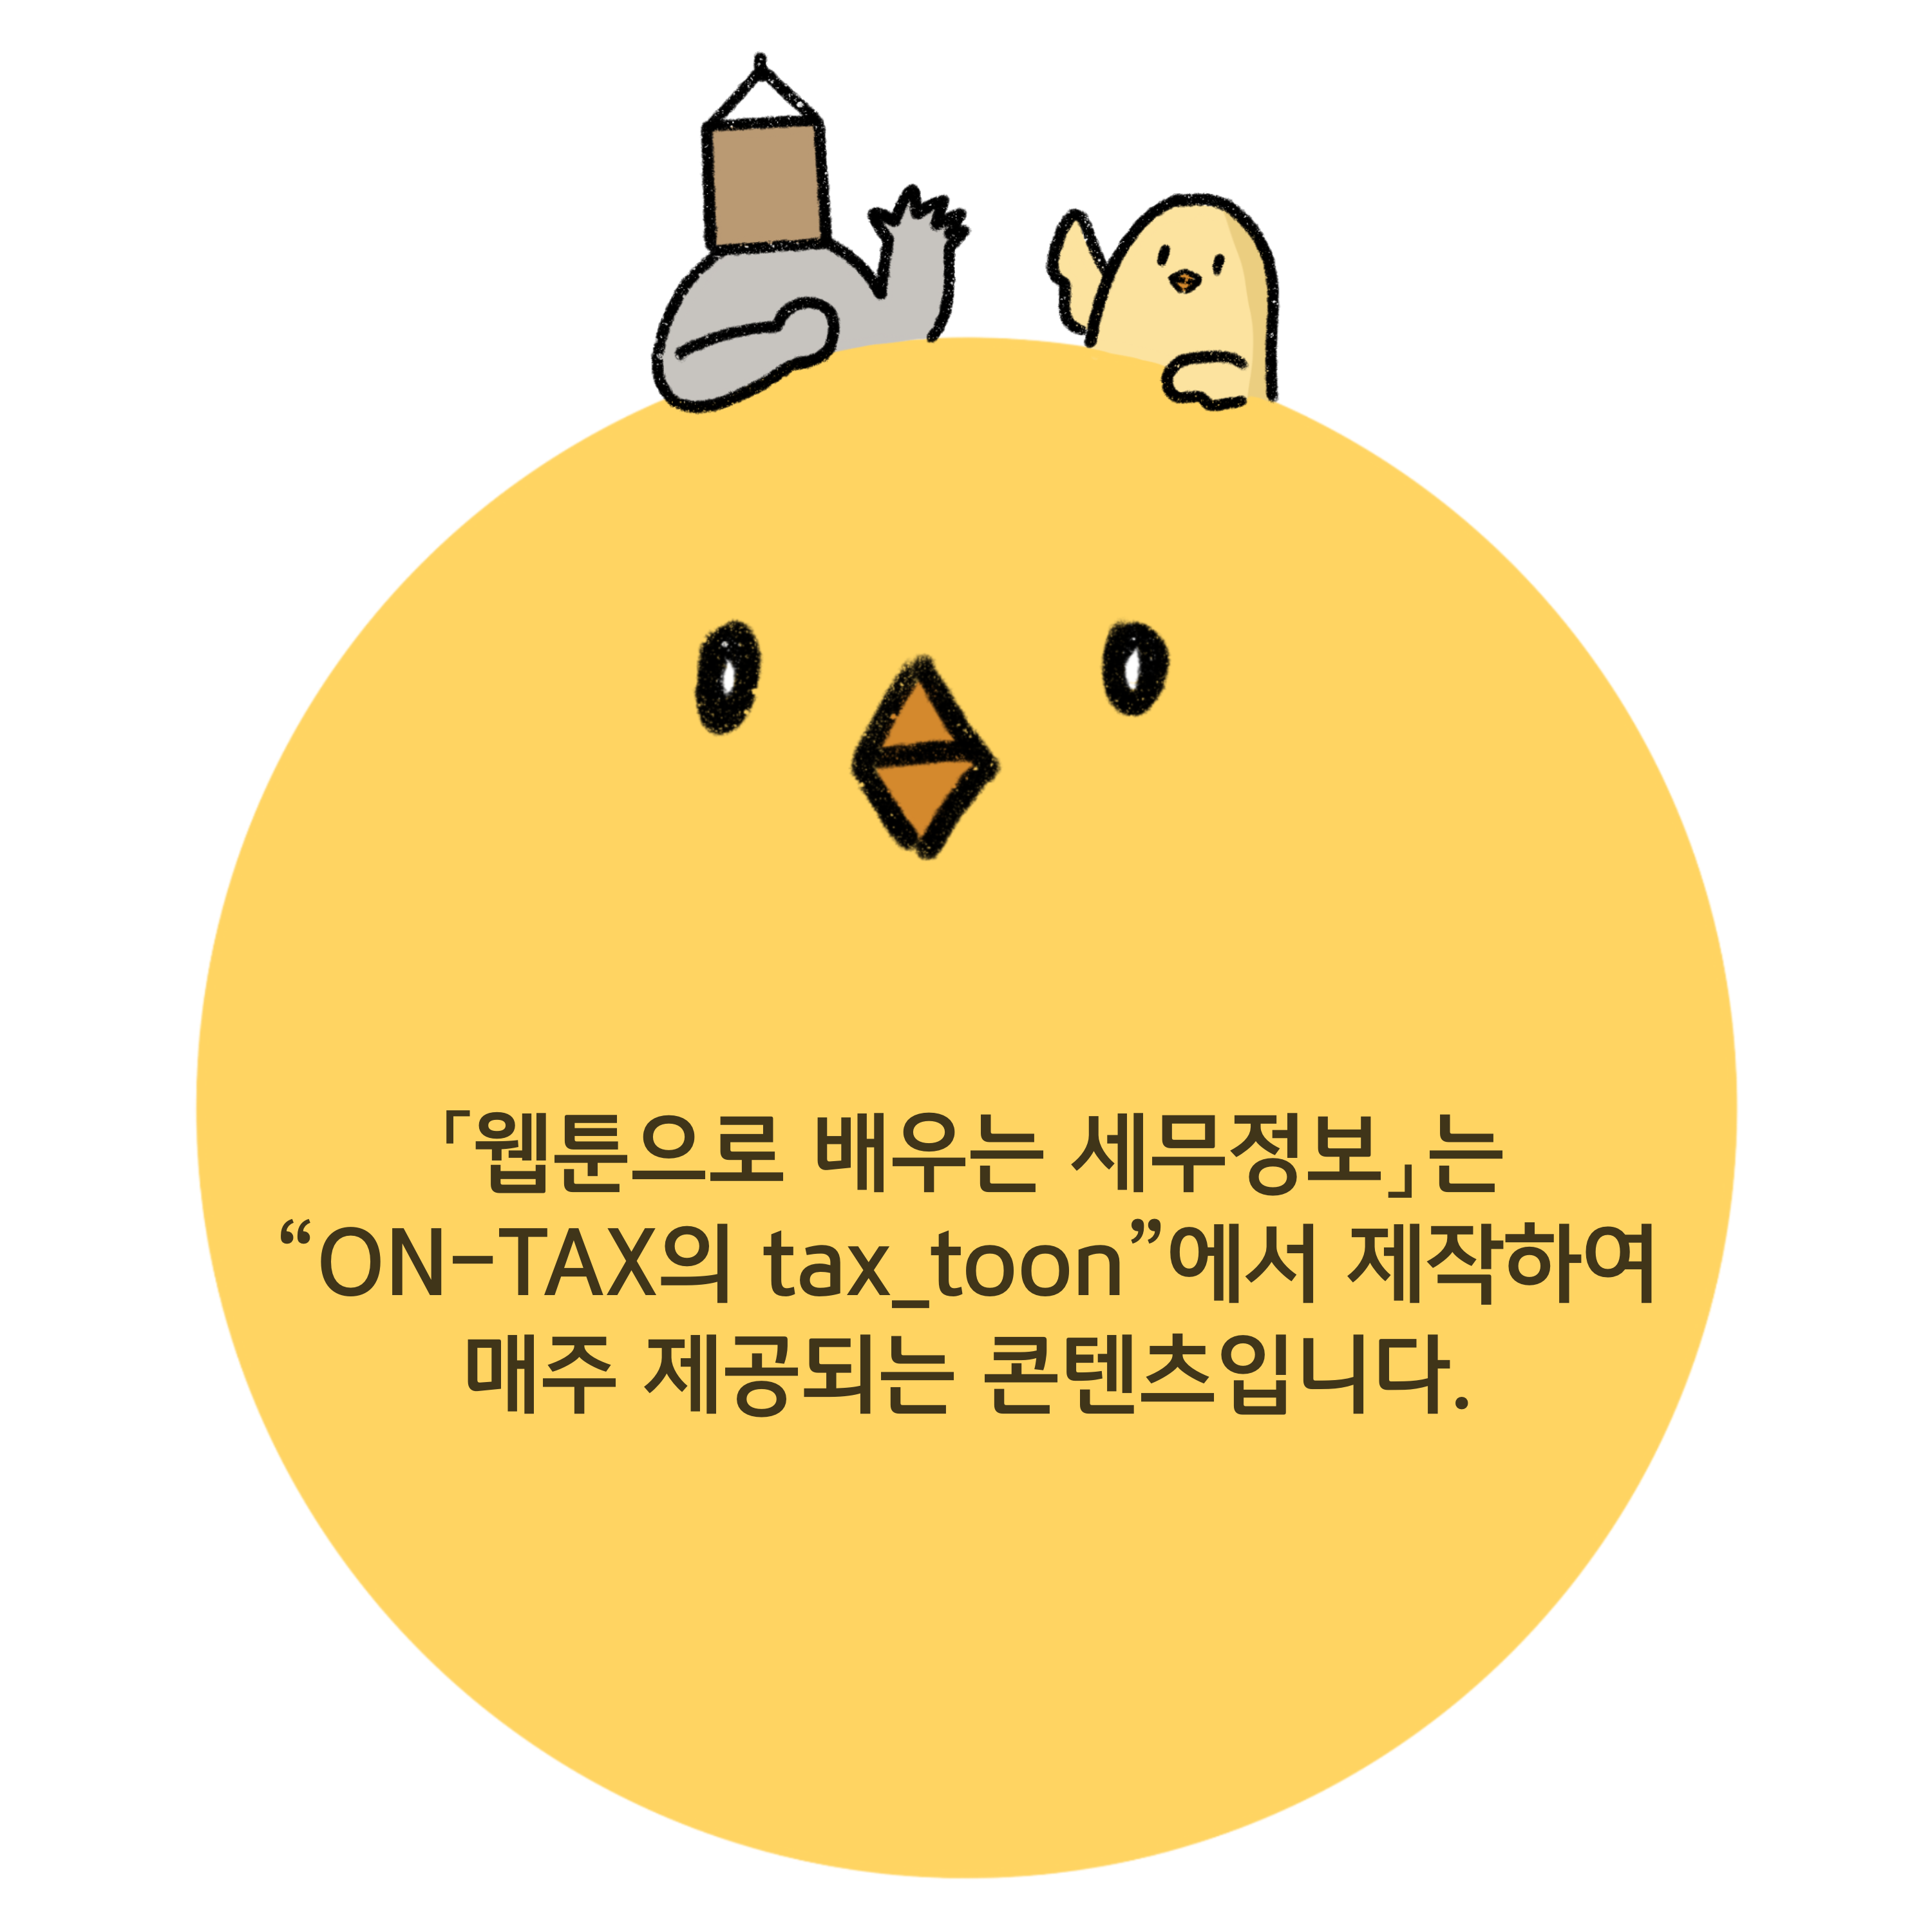 웹툰으로 배우는 세무정보는 ON-TAX의 tax_toon에서 제작하여 매주 제공되는 콘텐츠 입니다.